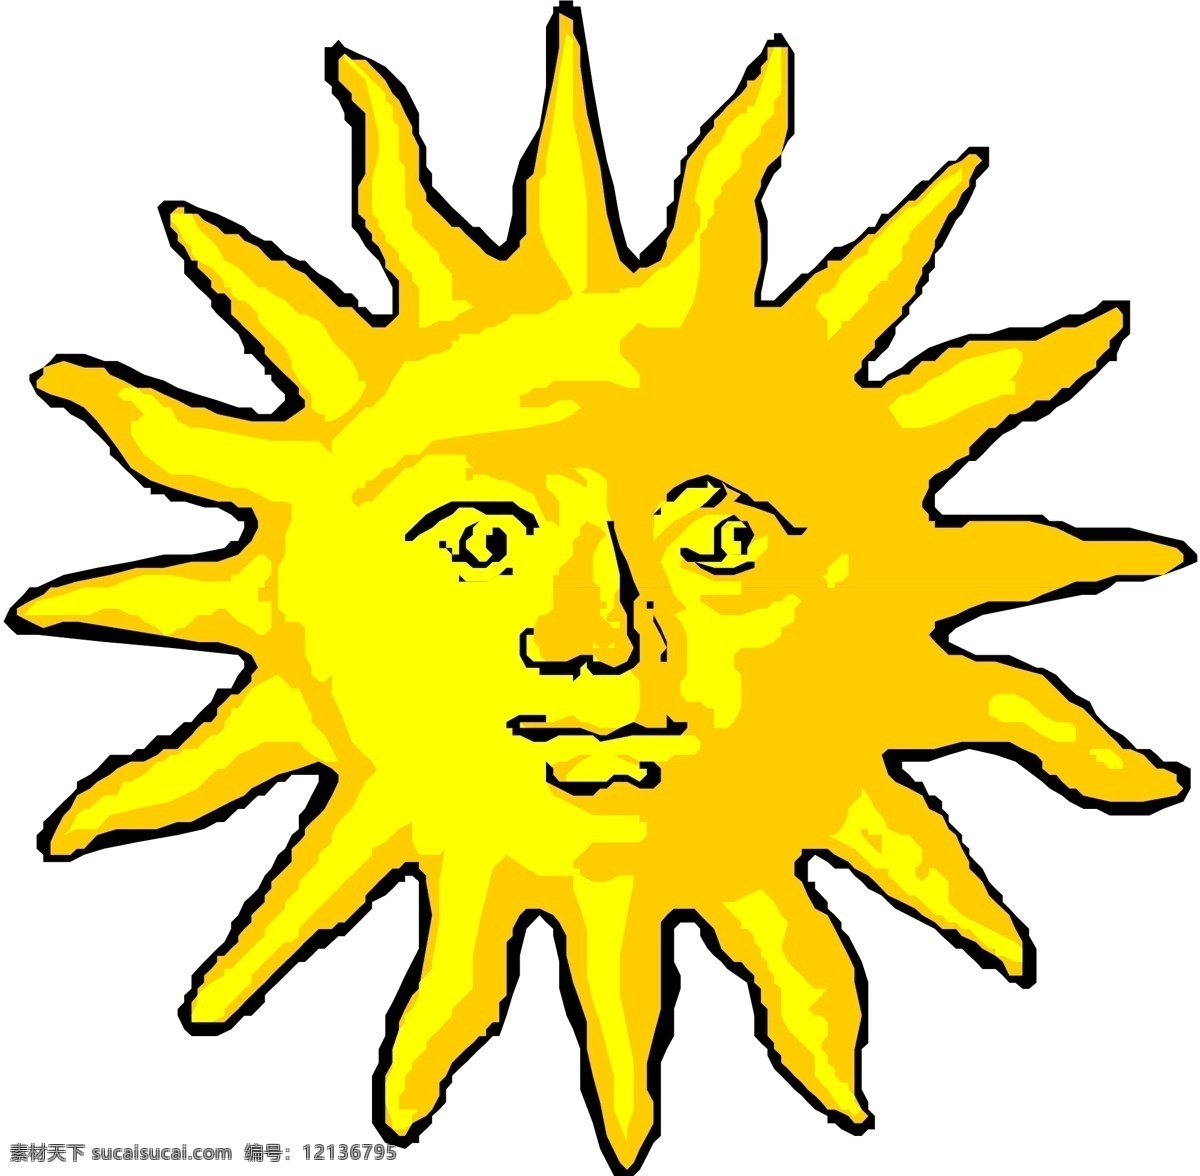 夏天太阳 矢量下载 网页矢量 商业矢量 矢量传统图案 黄色